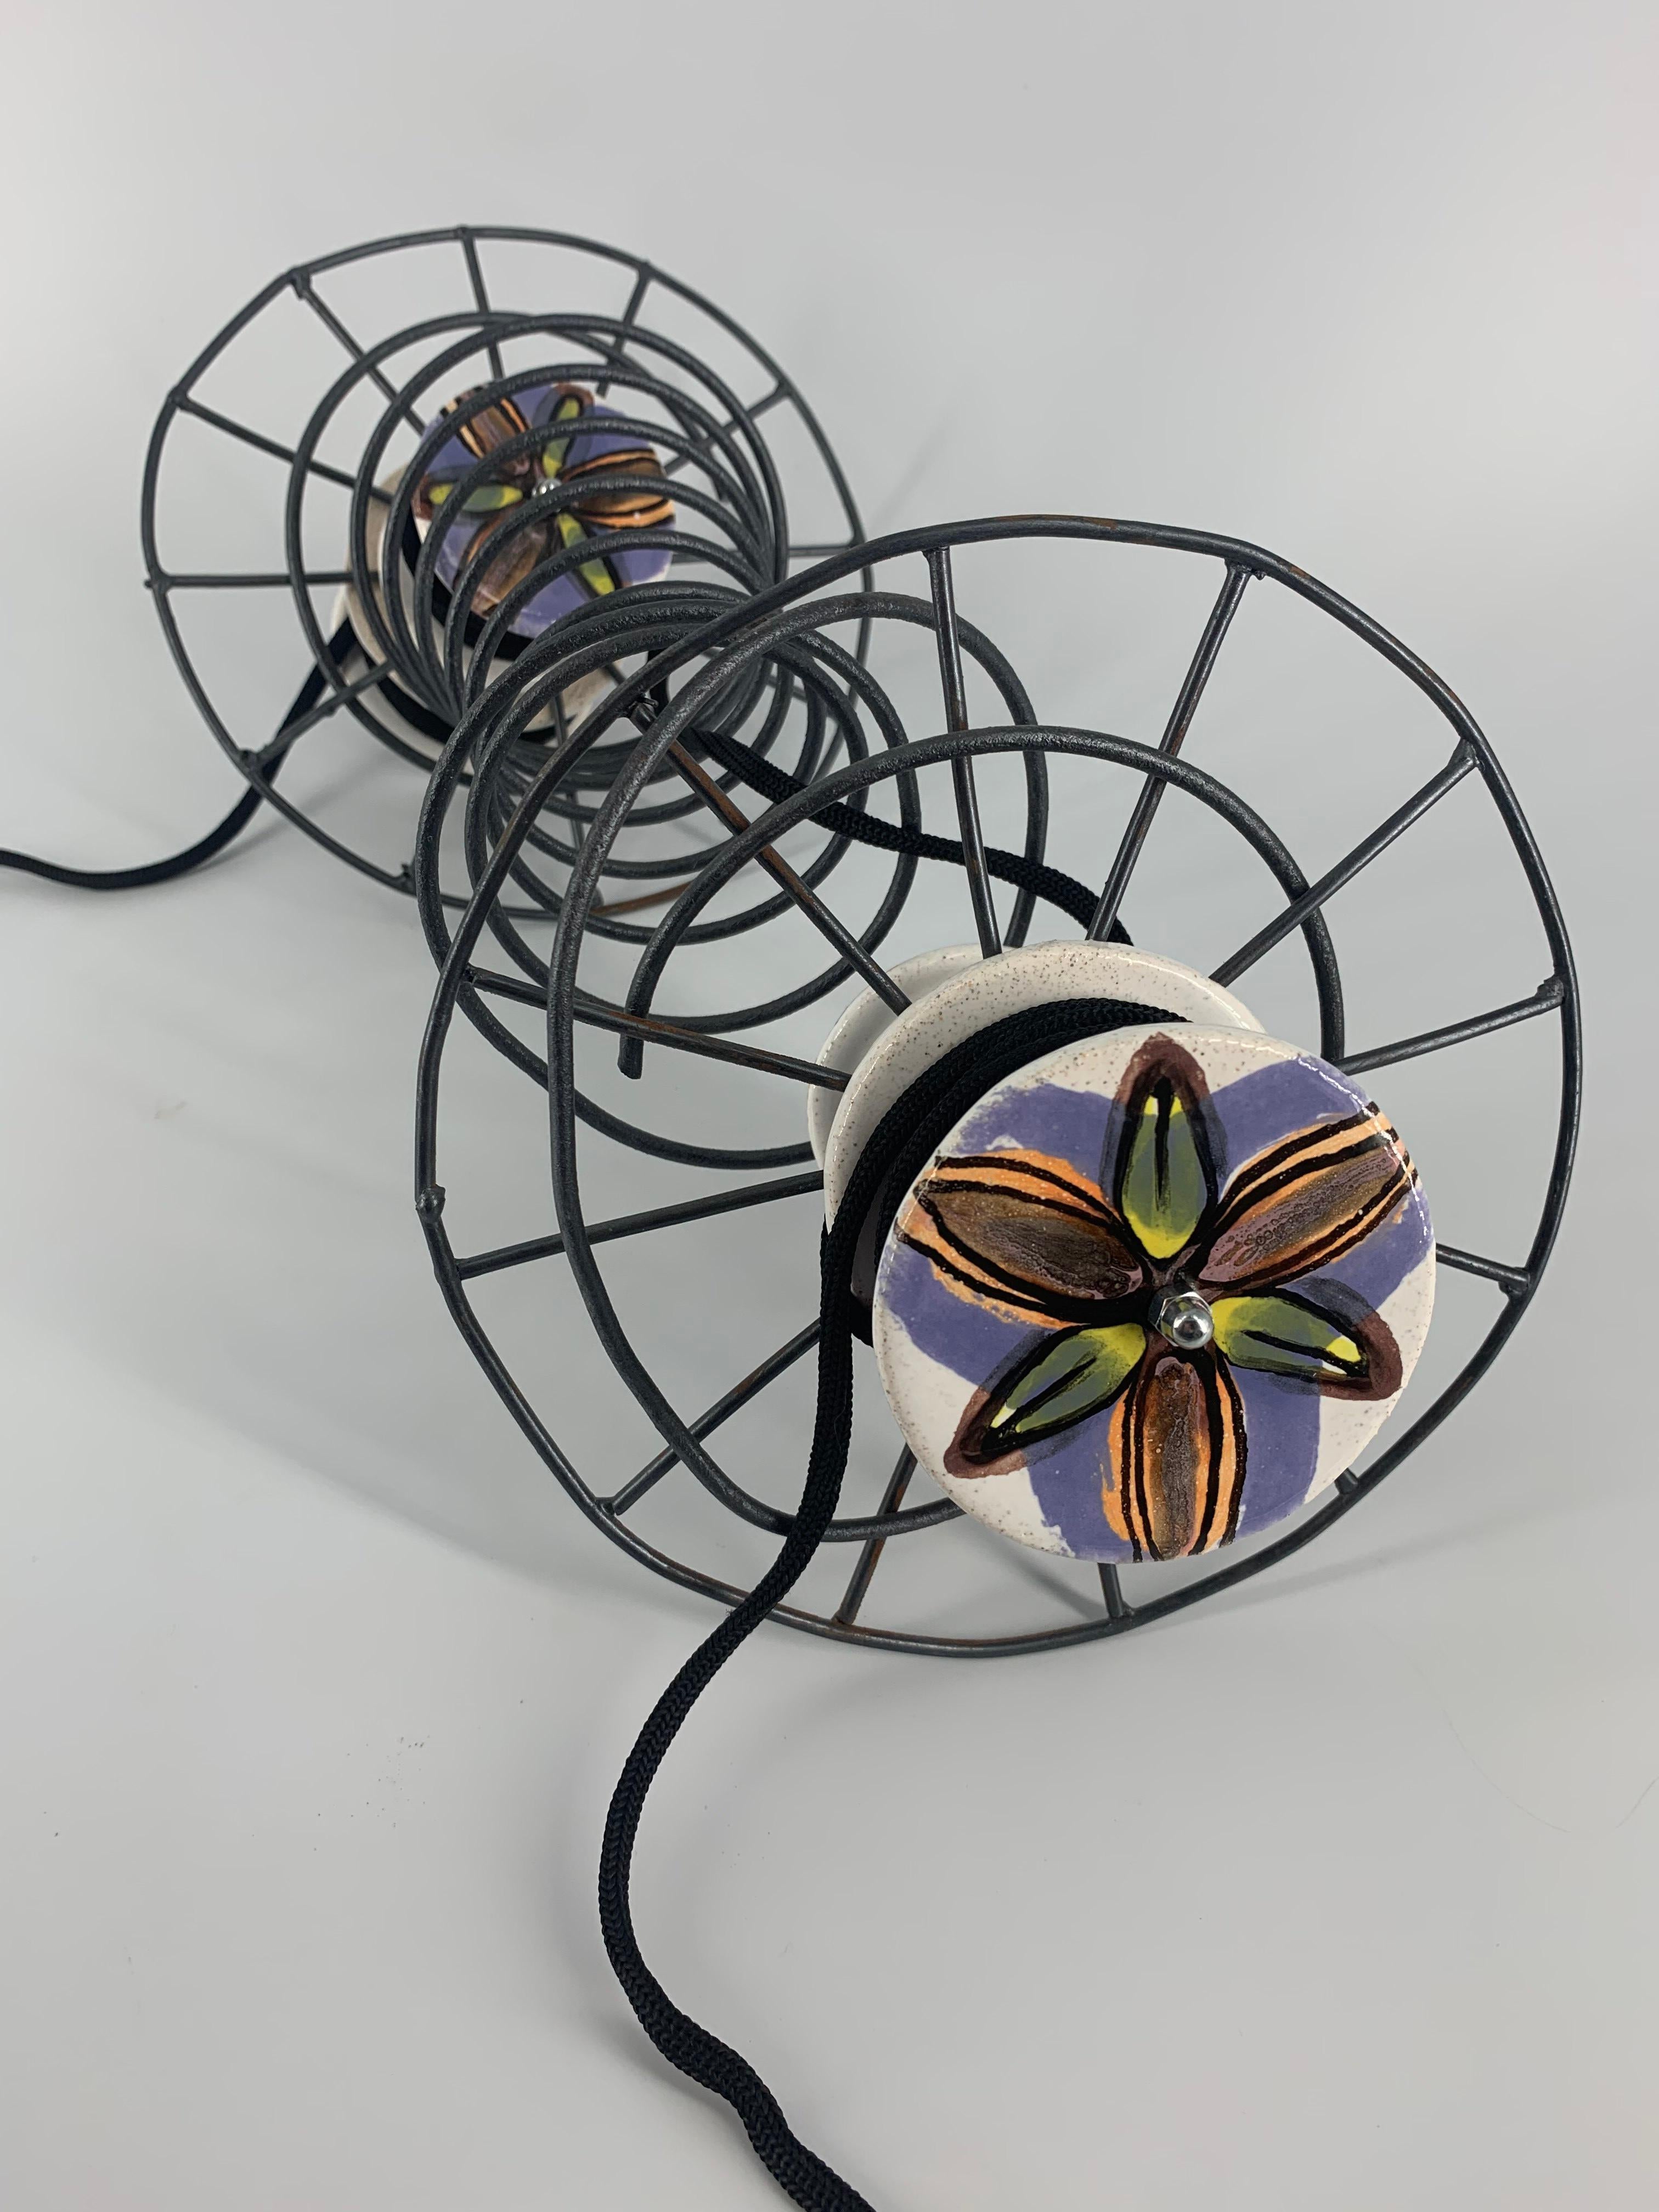 Spools in a spool II - Sculpture by Olesia Dvorak-Galik